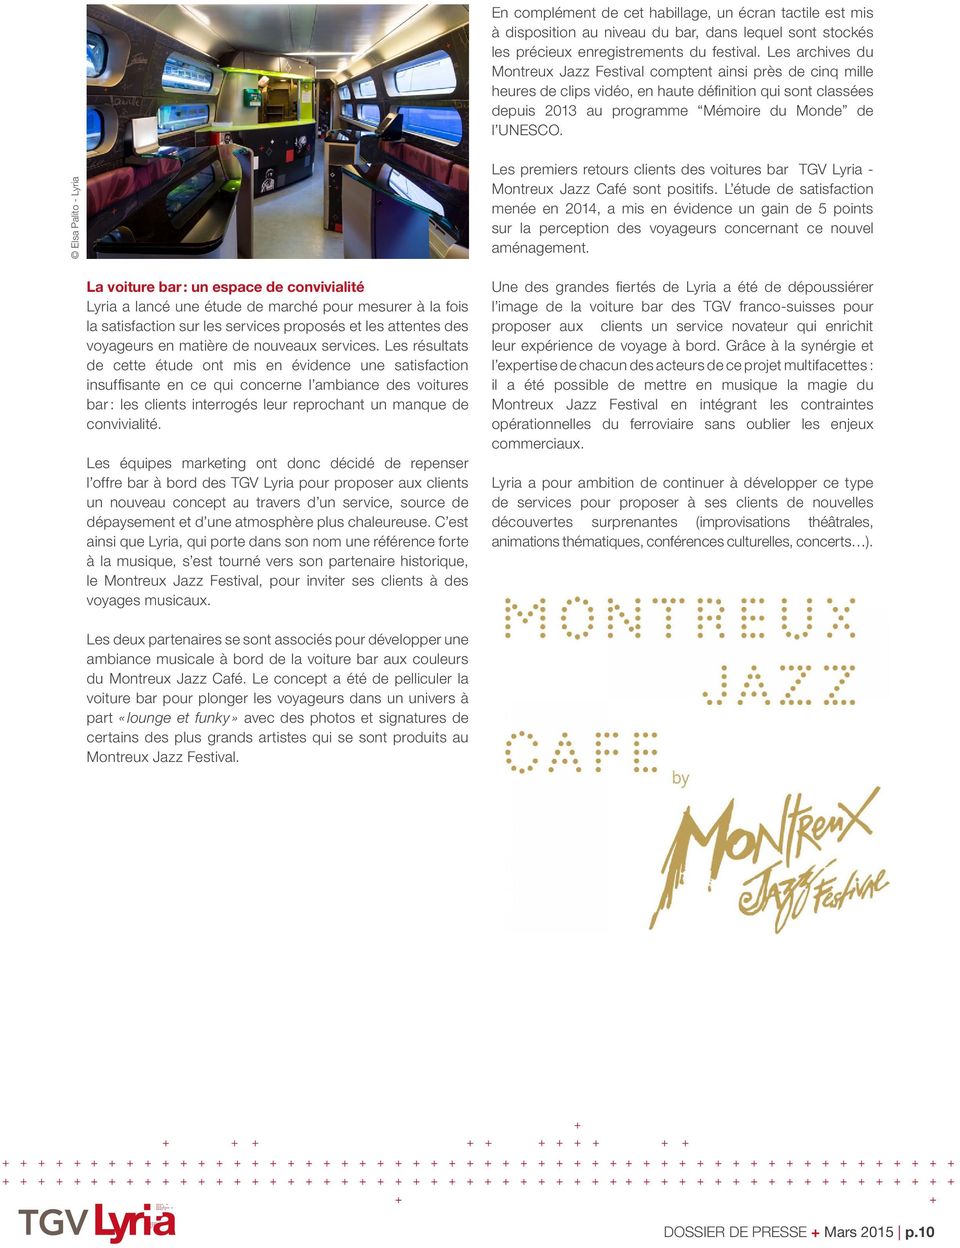 Elsa Palito - Lyria Les premiers retours clients des voitures bar TGV Lyria - Montreux Jazz Café sont positifs.